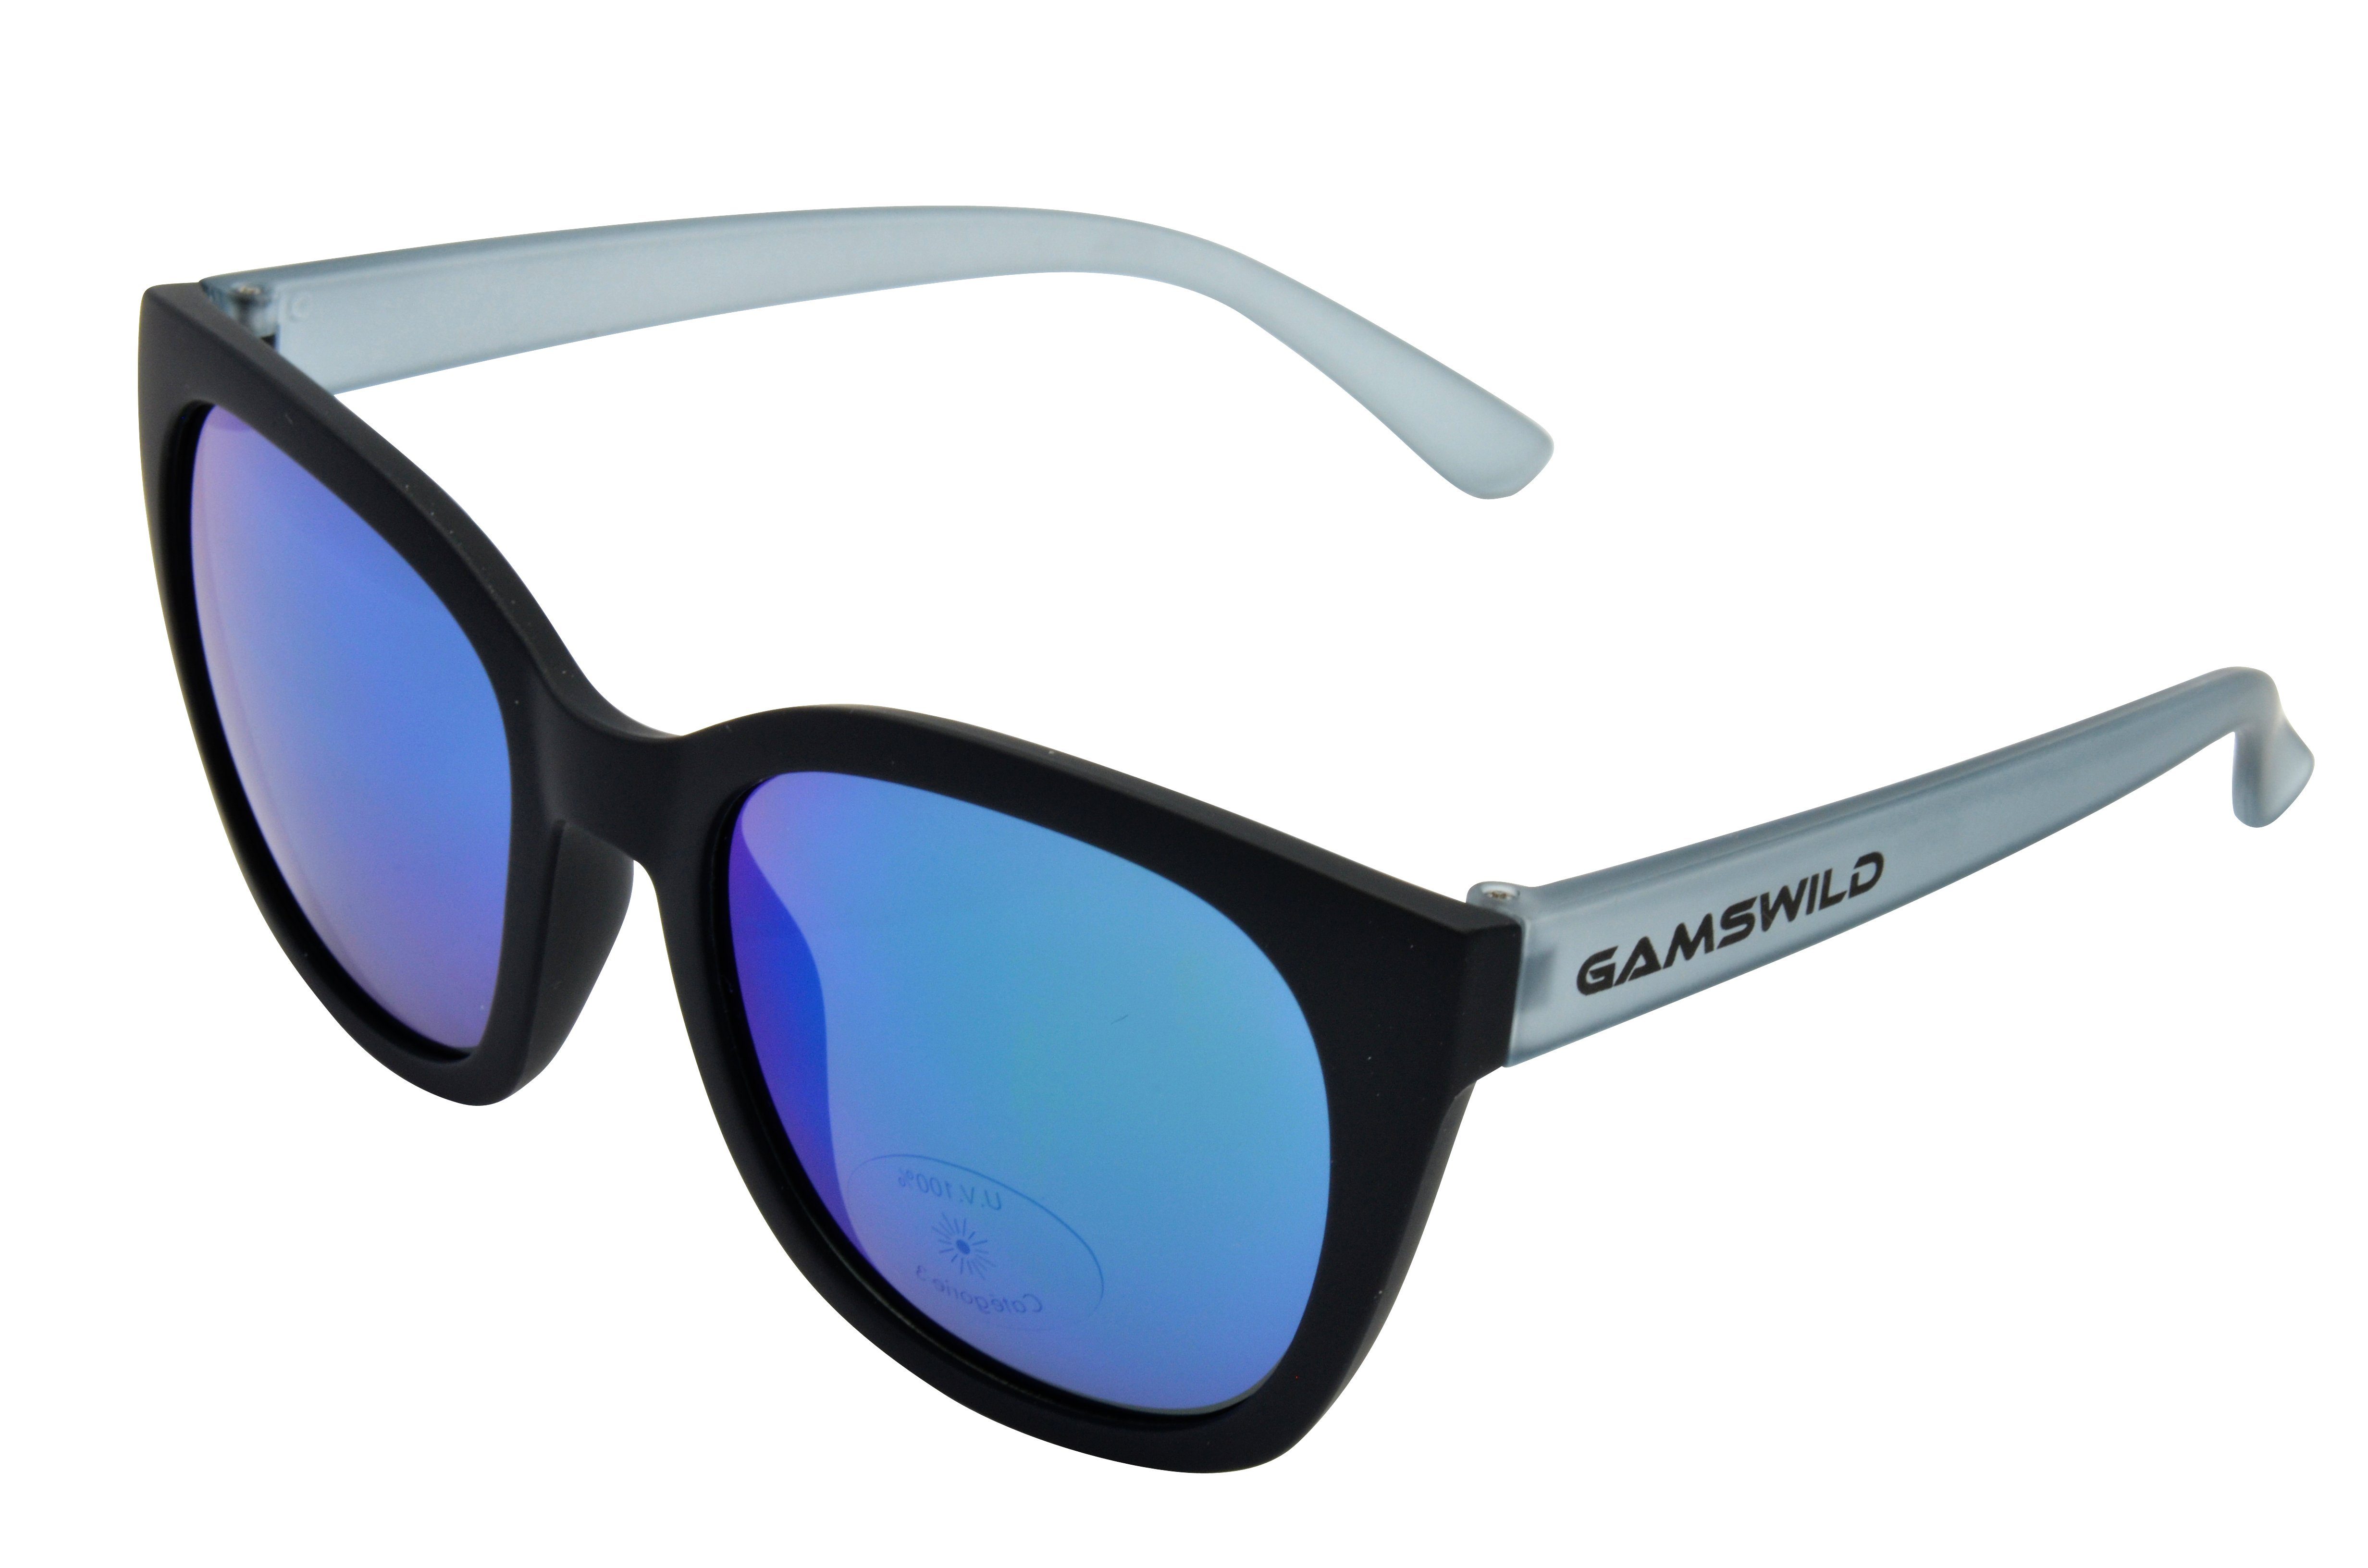 Gamswild Sonnenbrille WJ7517 GAMSKIDS Jugendbrille 8-18 Jahre Kinderbrille Mädchen Damen kids Unisex, blau, pink, grau halbtransparenter Rahmen